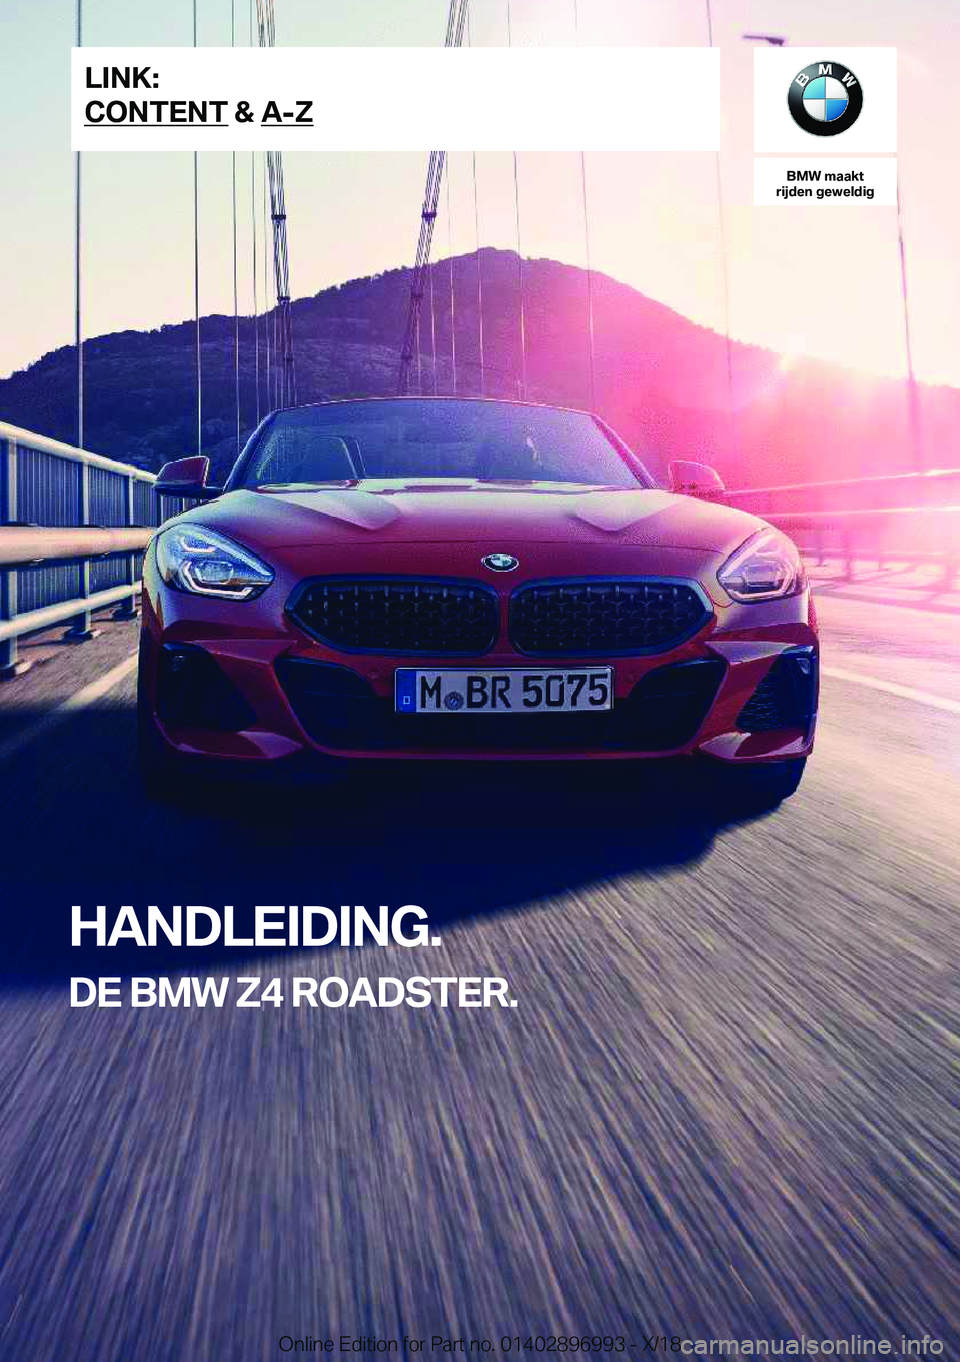 BMW Z4 2019  Instructieboekjes (in Dutch) �B�M�W��m�a�a�k�t
�r�i�j�d�e�n��g�e�w�e�l�d�i�g
�H�A�N�D�L�E�I�D�I�N�G�.
�D�E��B�M�W��Z�4��R�O�A�D�S�T�E�R�.�L�I�N�K�:
�C�O�N�T�E�N�T��&��A�-�Z�O�n�l�i�n�e��E�d�i�t�i�o�n��f�o�r��P�a�r�t��n